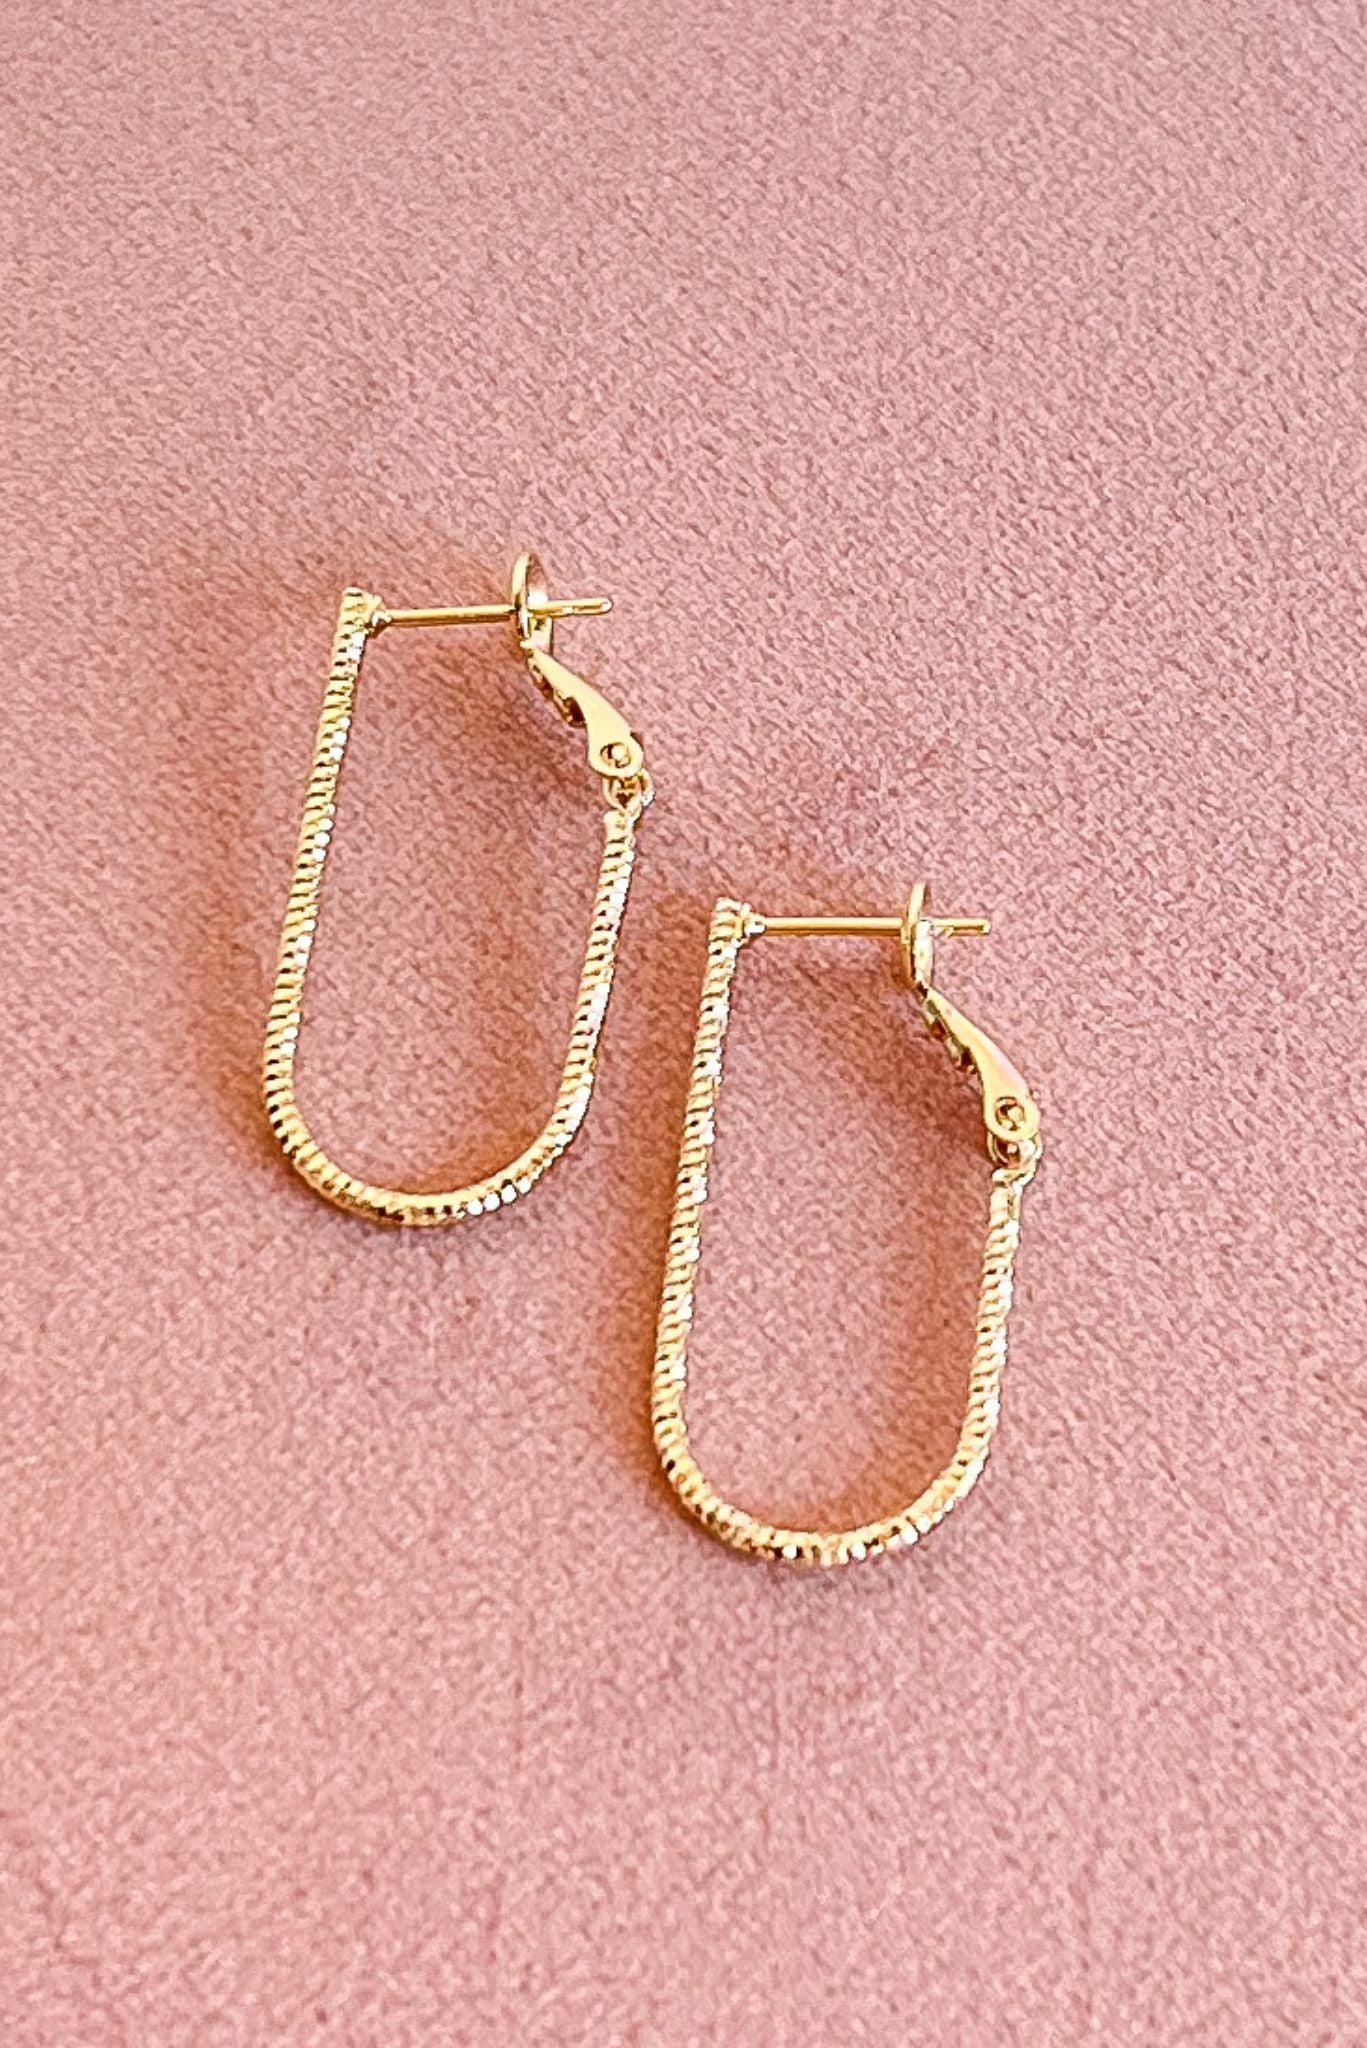 Gold Textured Metal Oval Hoop Earrings